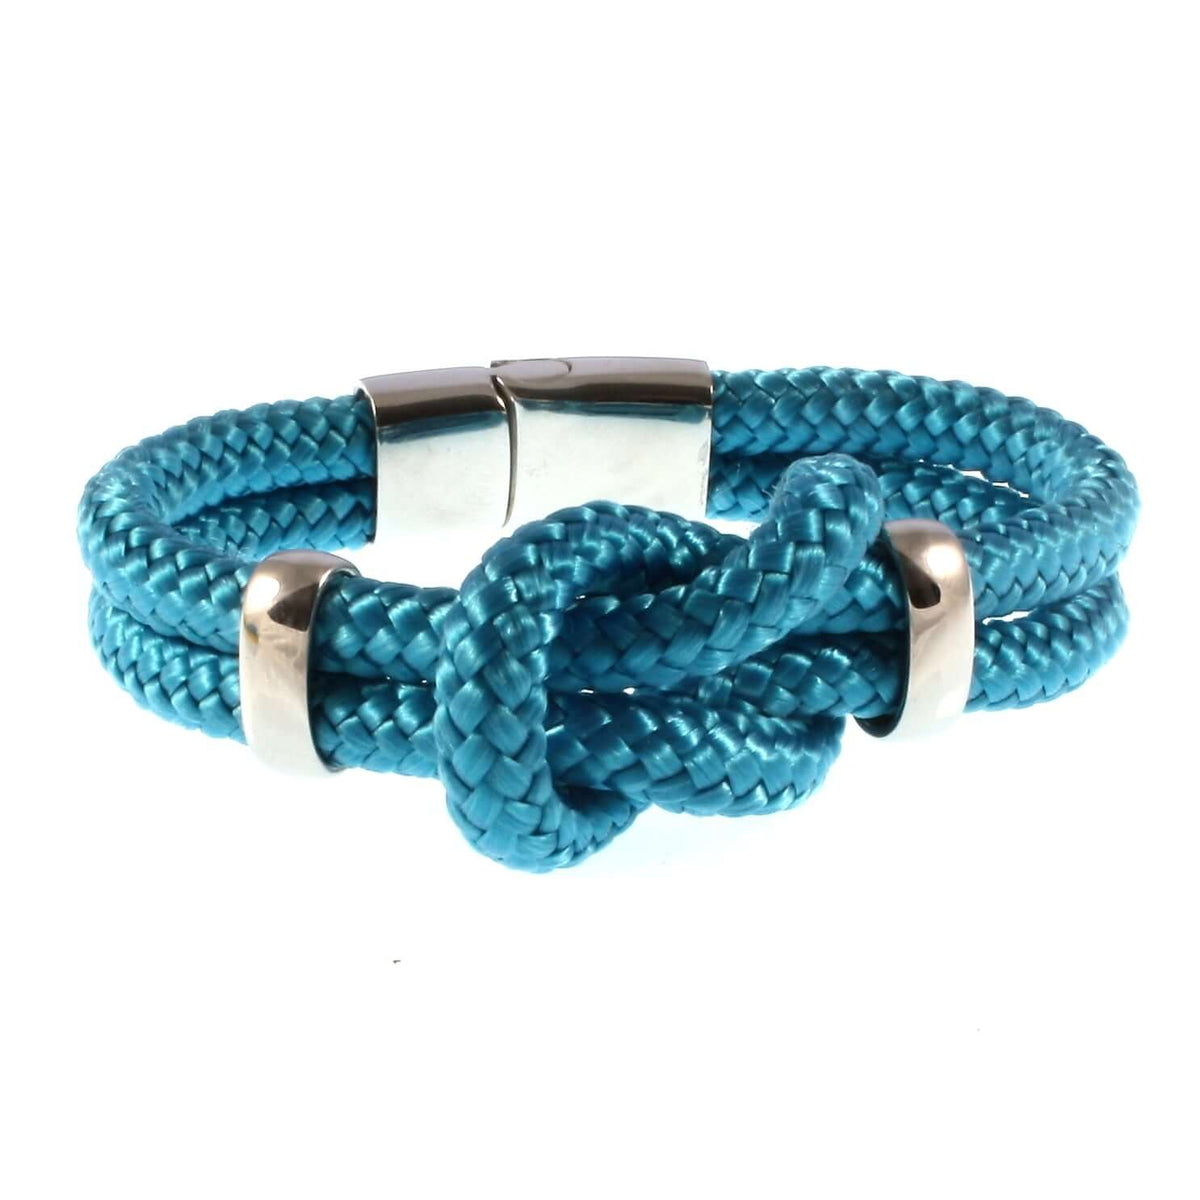 Damen-Segeltau-armband-pure-blau-silber-geflochten-Edelstahlverschluss-vorn-wavepirate-shop-st